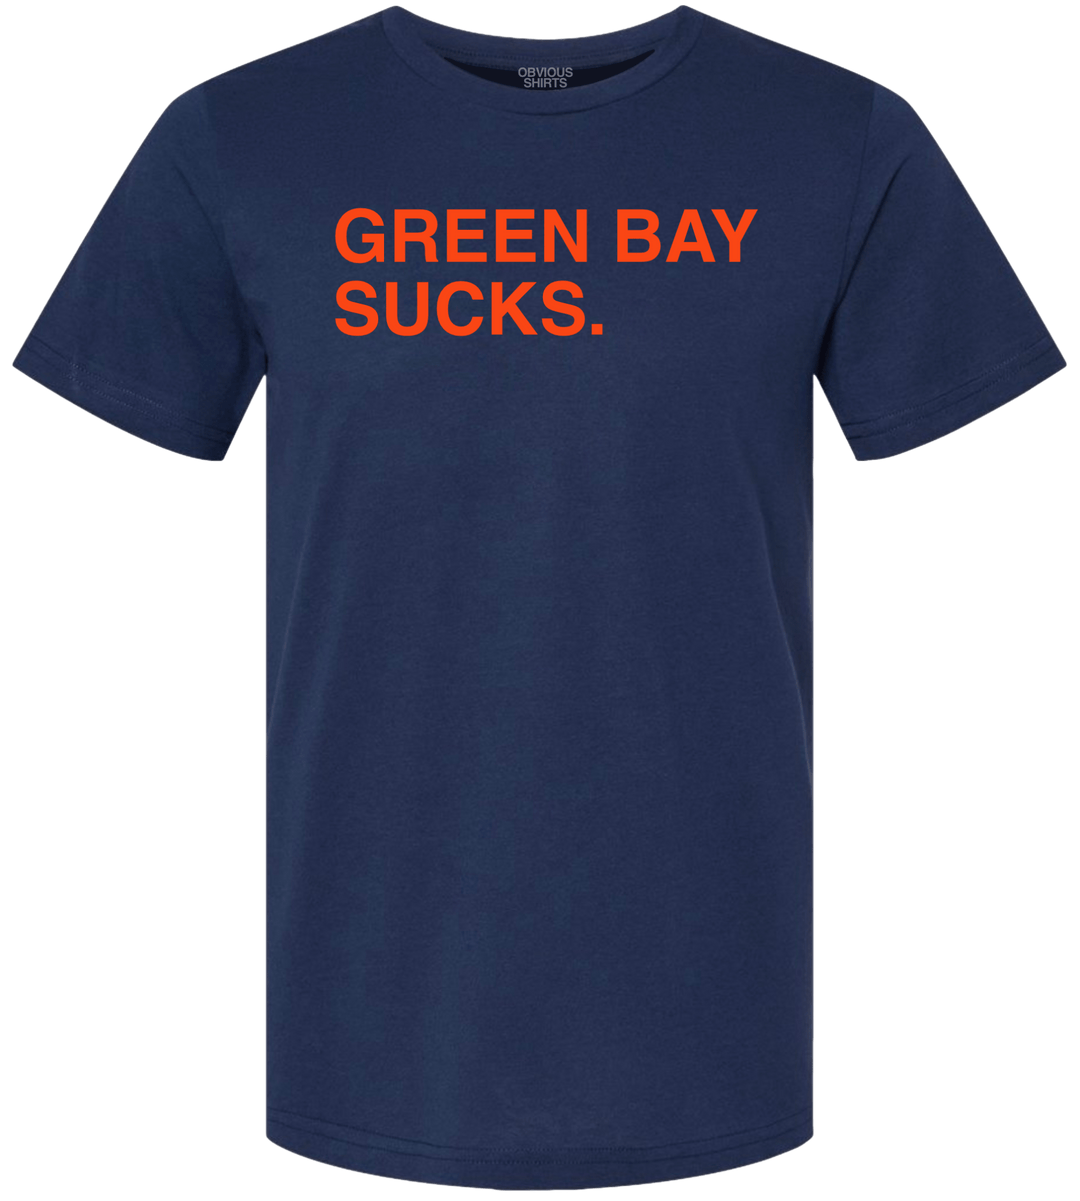 GREEN BAY SUCKS. - OBVIOUS SHIRTS